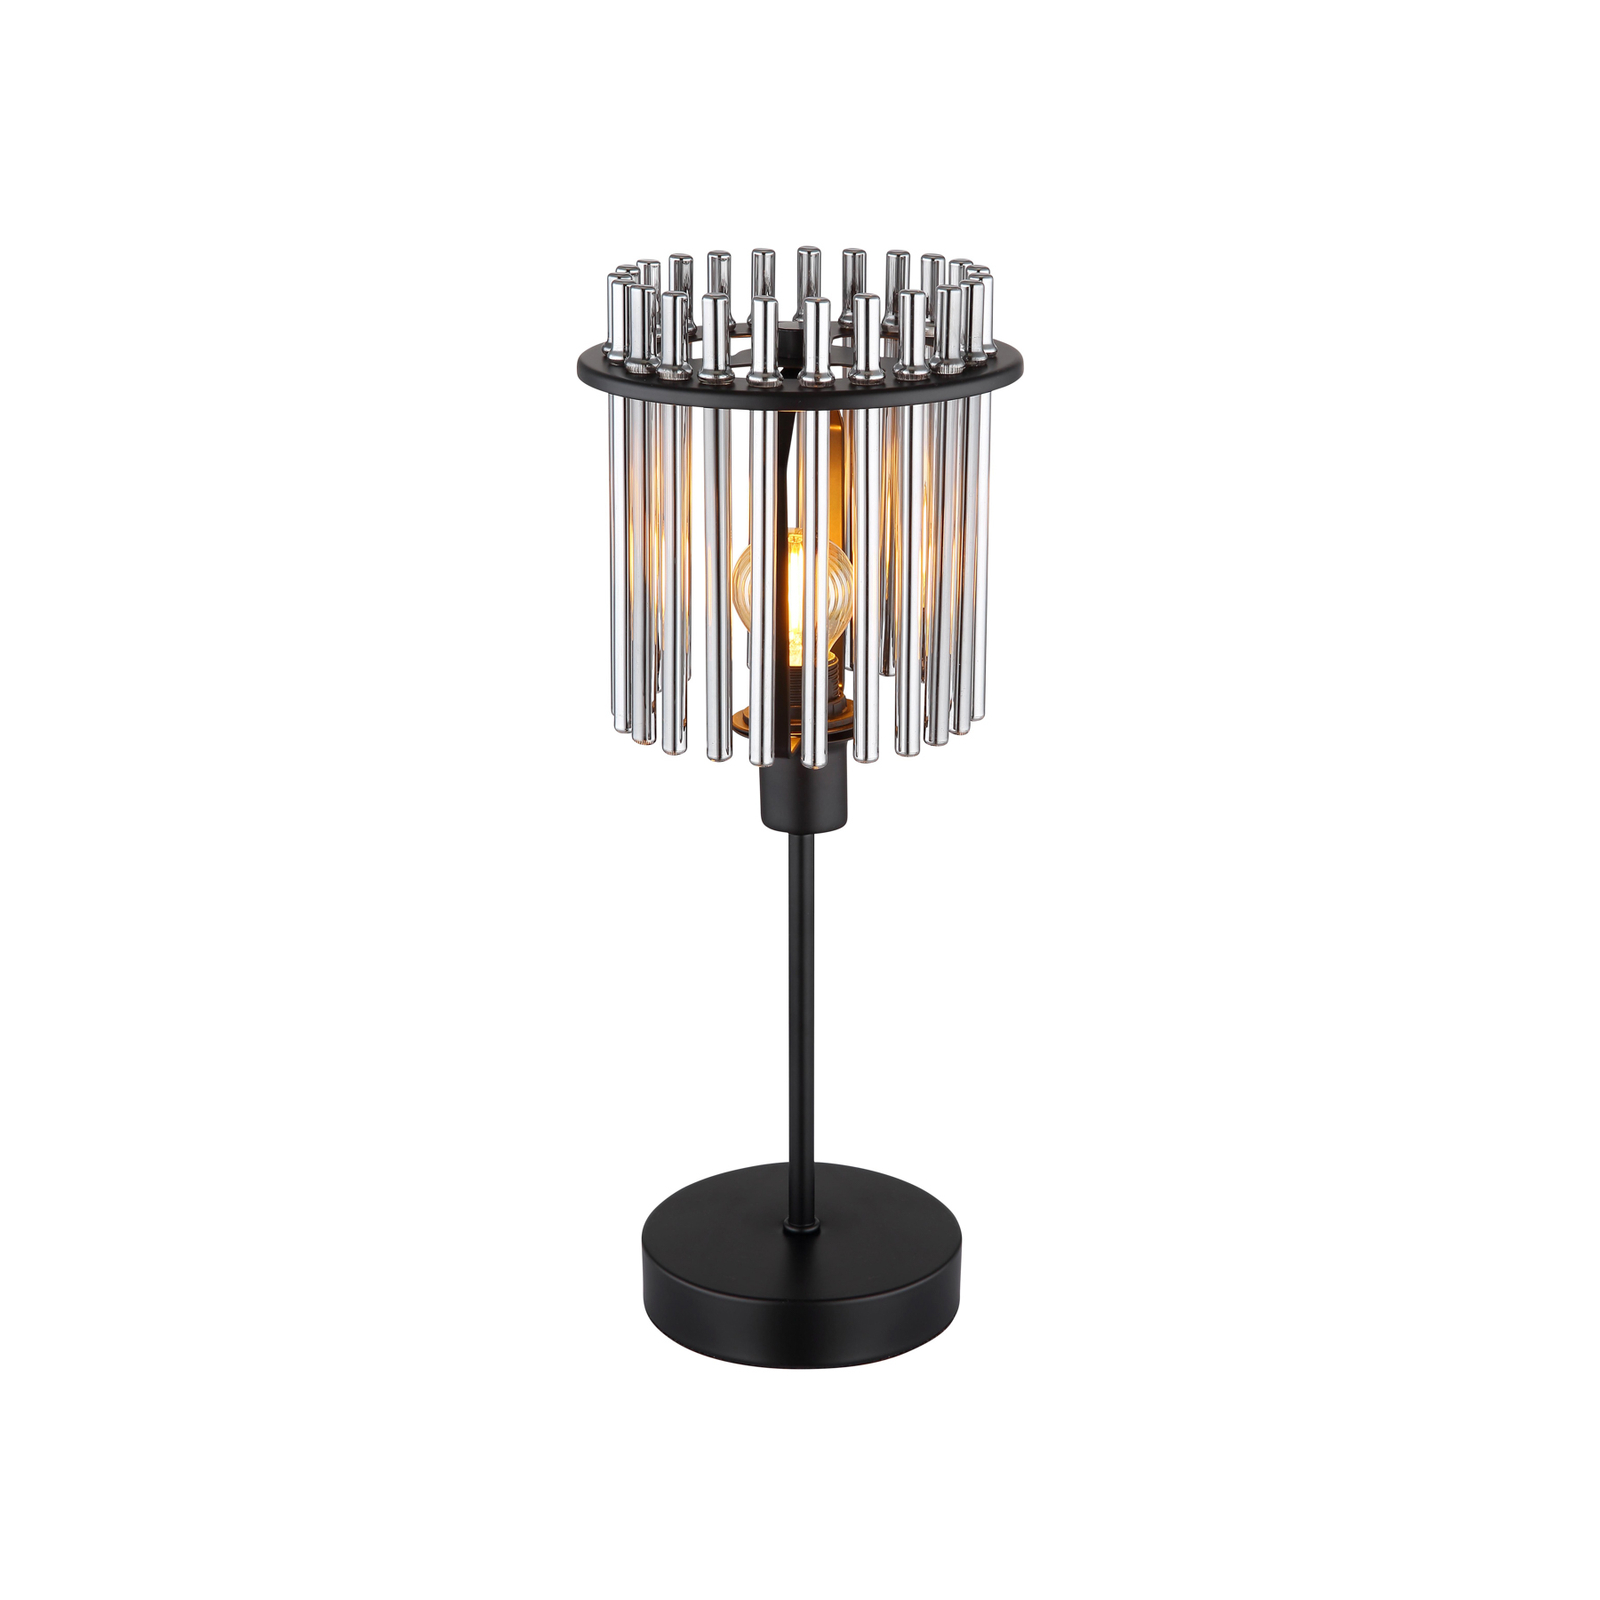 Gorley bordlampe, høyde 37,5 cm, røykgrått, glass/metall